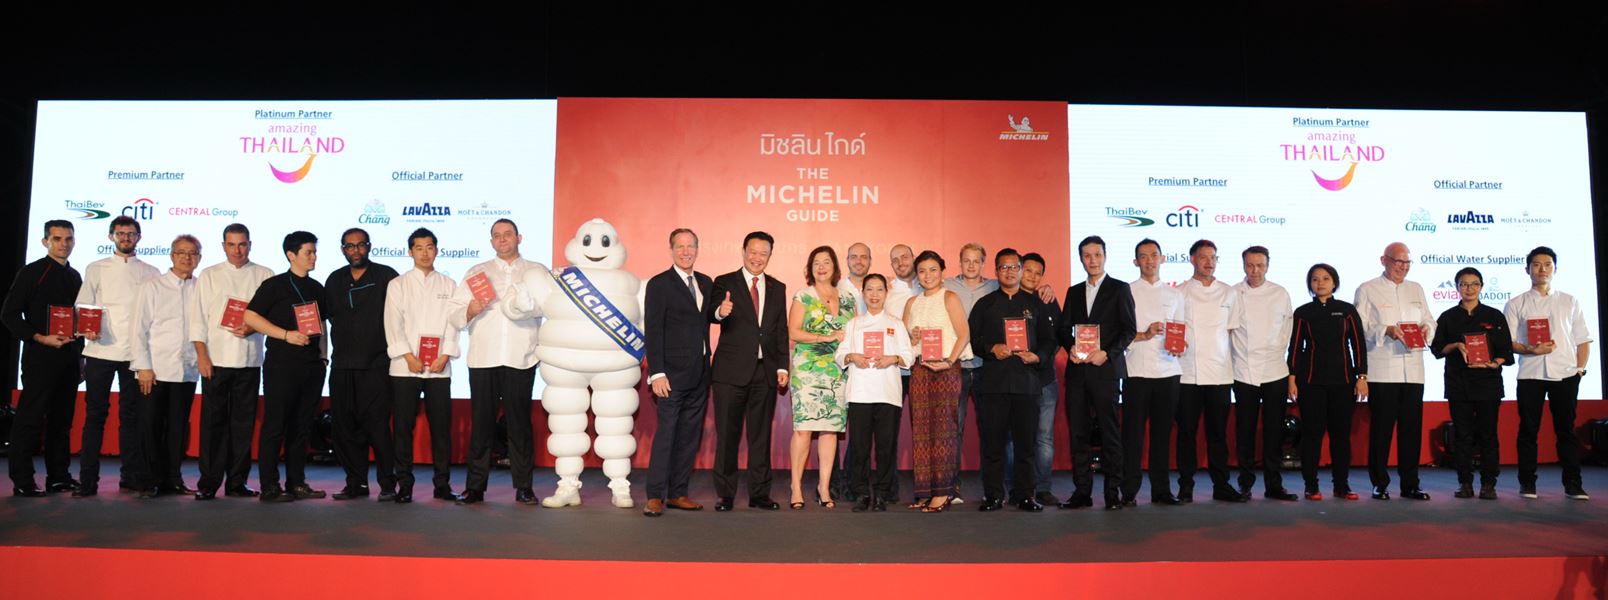 001-Michelin Guide Bangkok Press Conference (1)